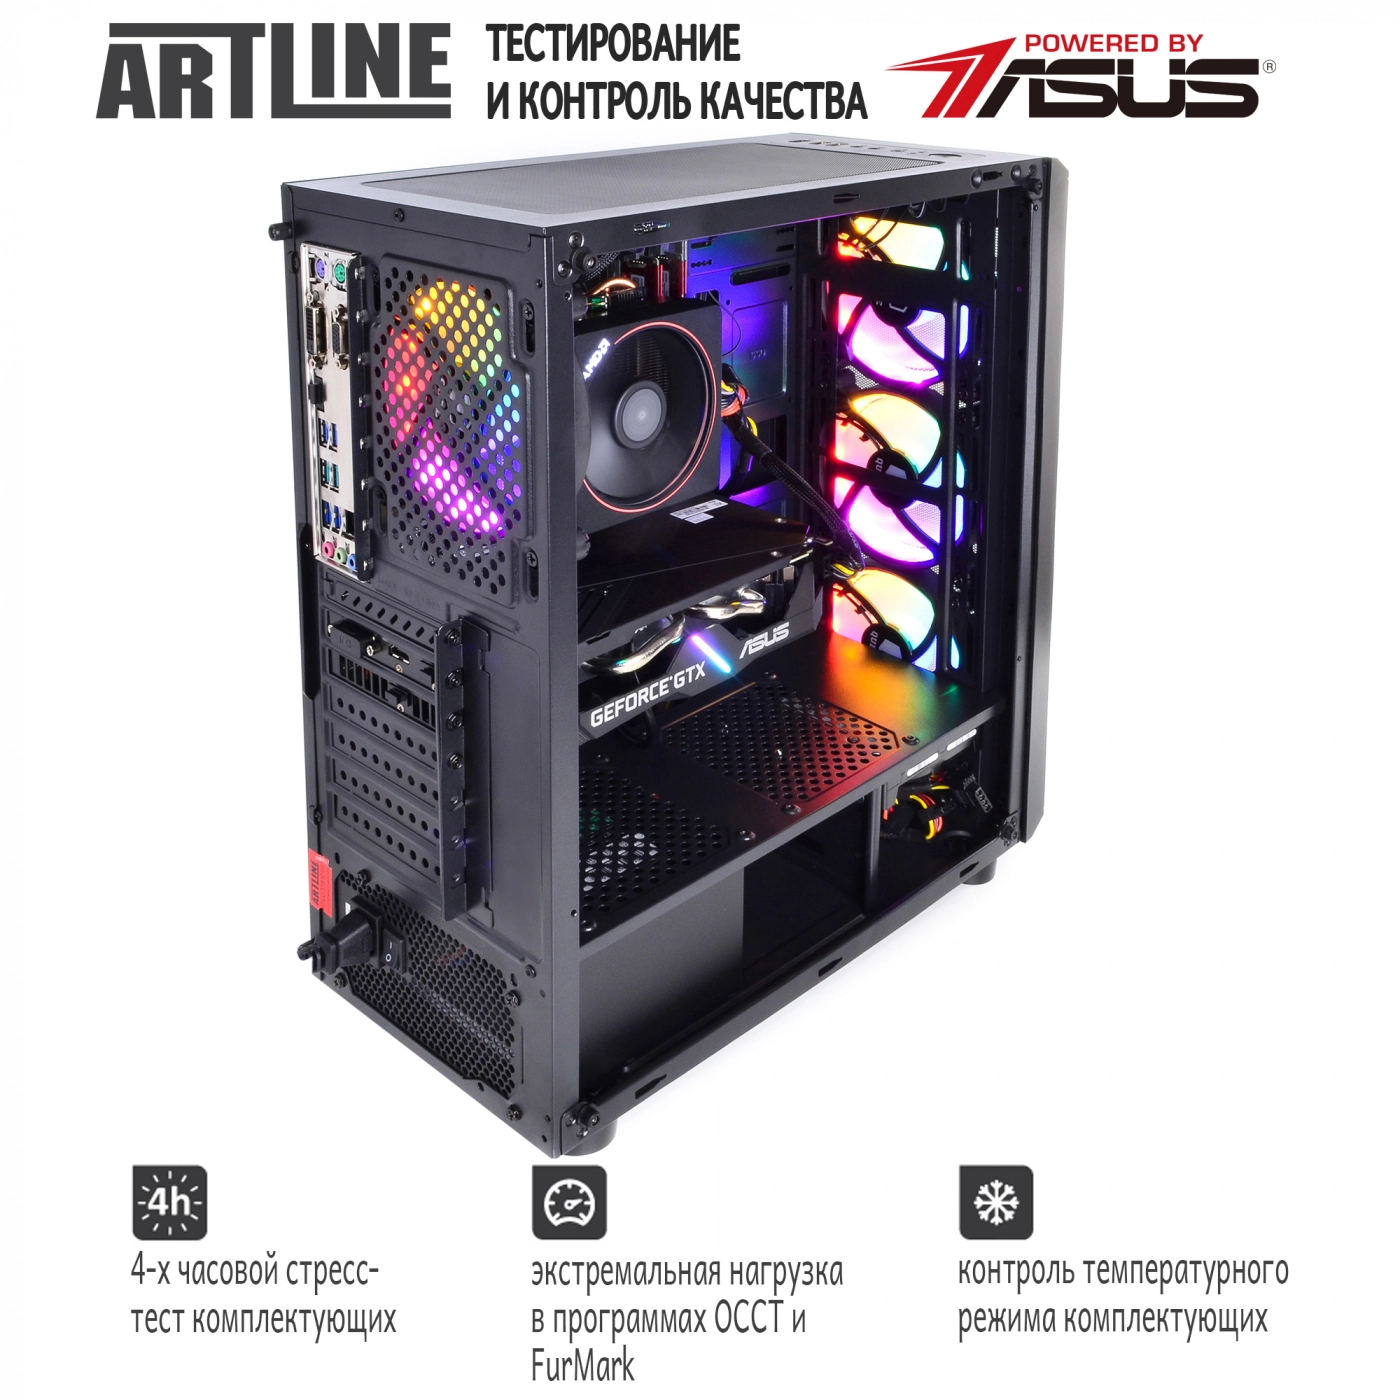 Купить Компьютер ARTLINE Gaming X43v12 - фото 7